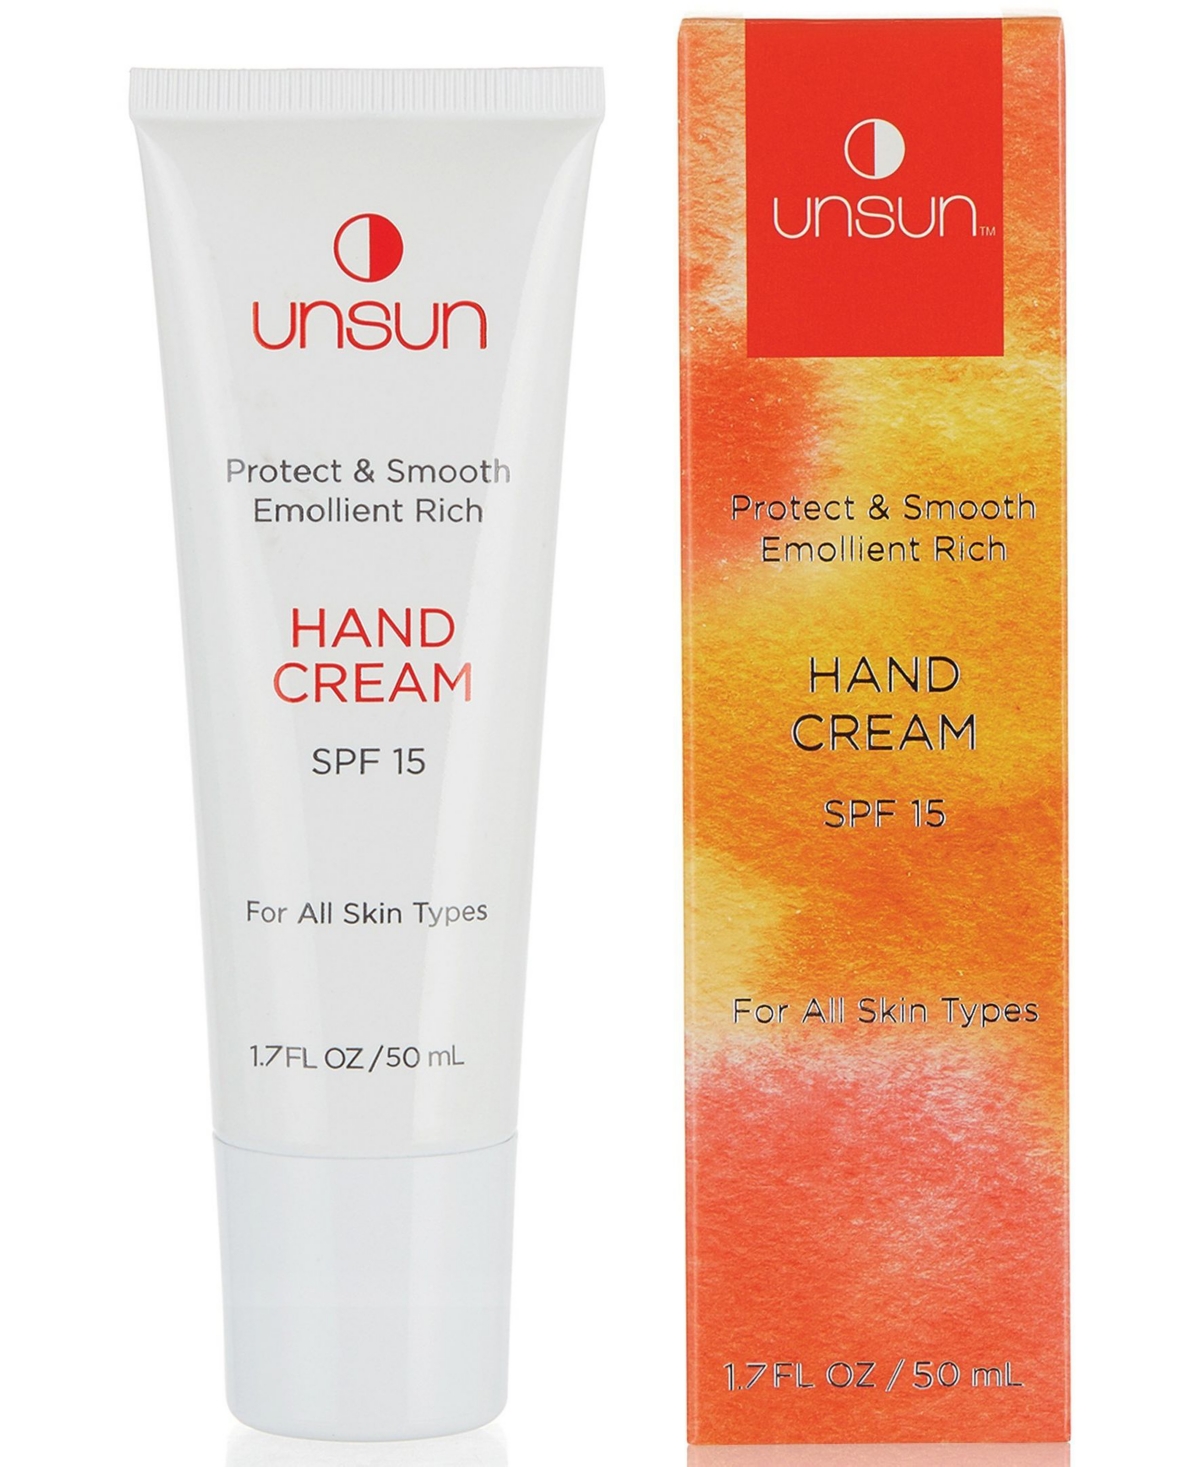 Unsun Rich Smooth Emollient Hand Cream, 1.7 oz - White